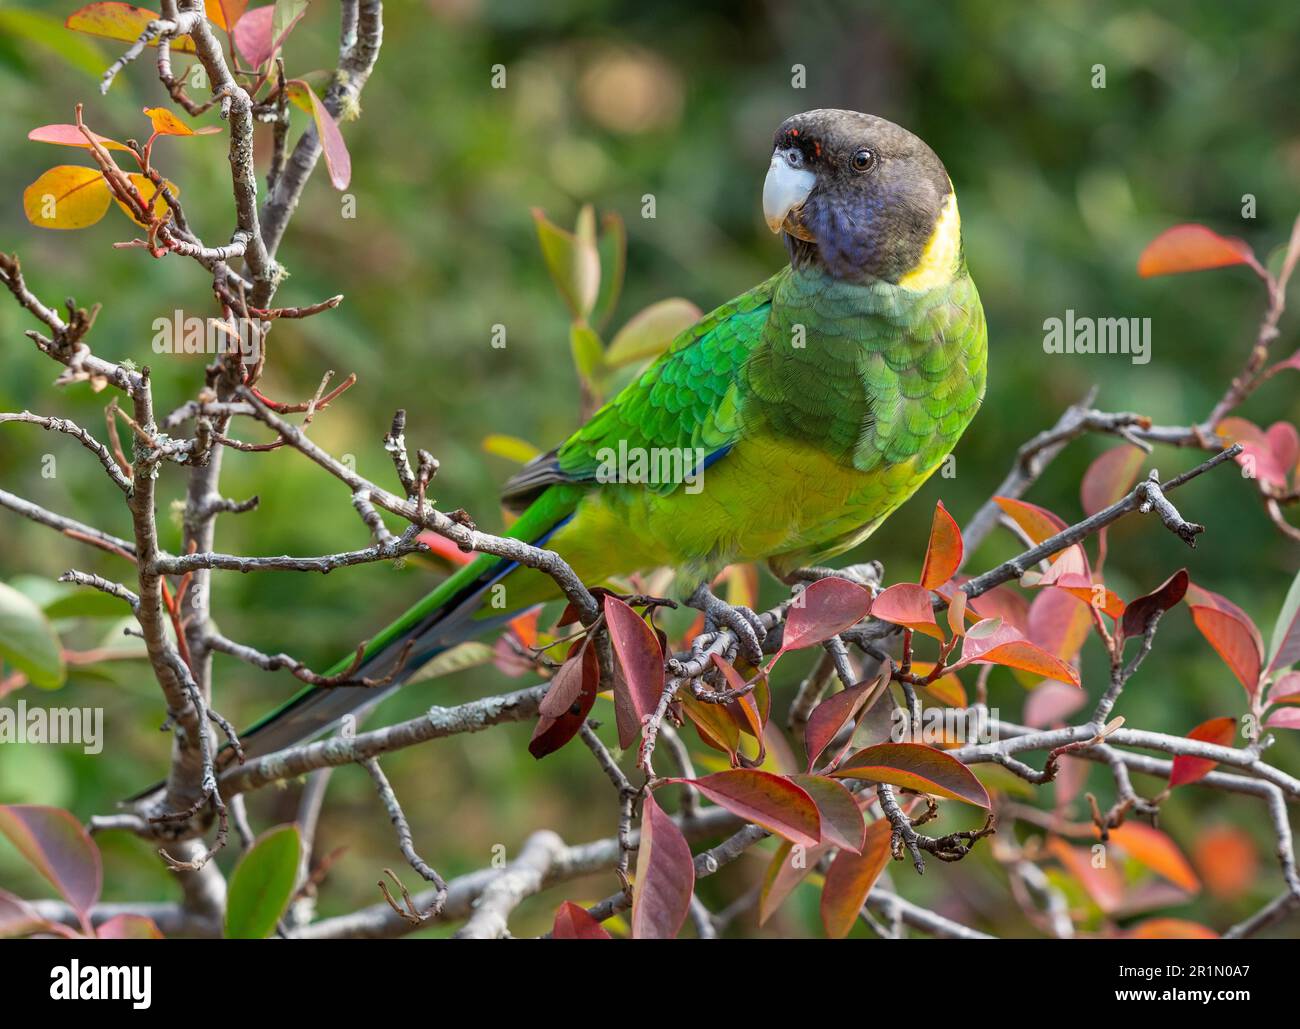 Un ringcou australien de la race occidentale, connu sous le nom de Parrot des vingt-huit, photographié dans une forêt du sud-ouest de l'Australie. Banque D'Images